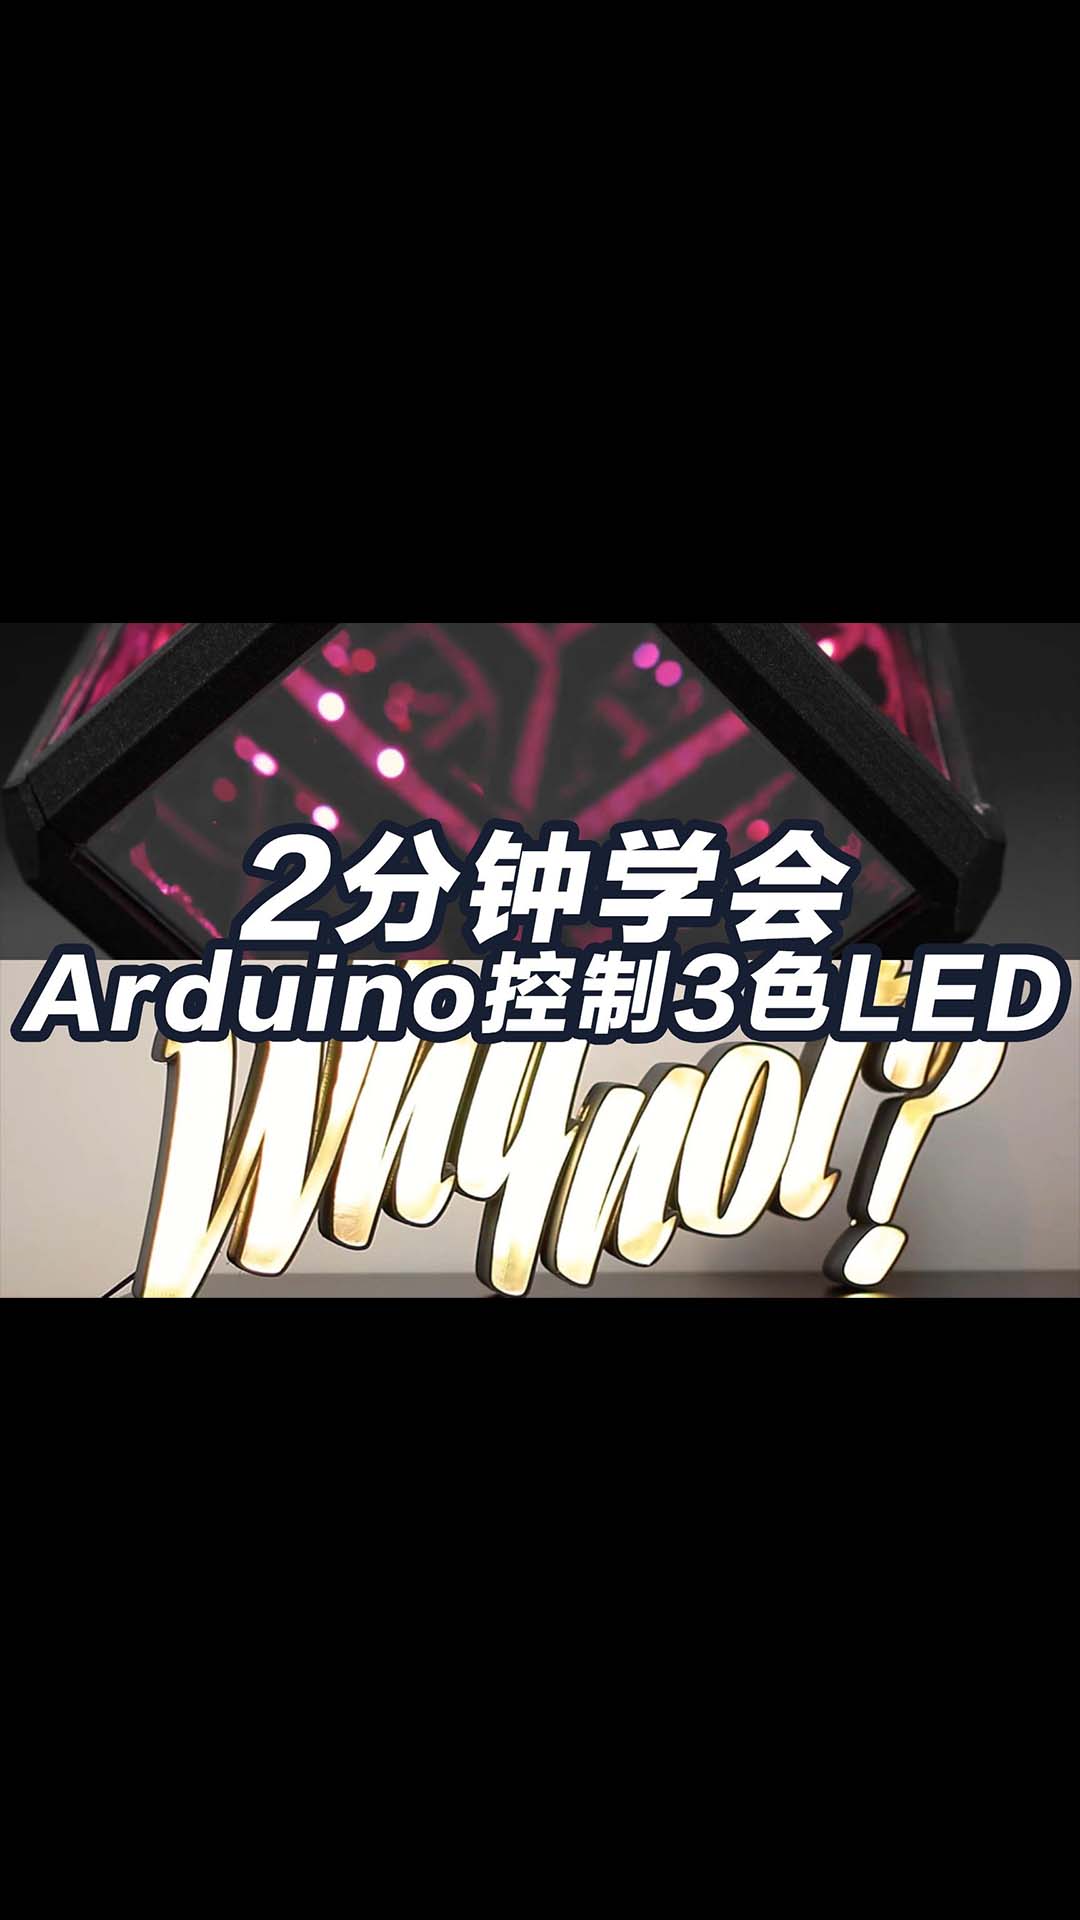 2分钟系列arduino控制WS2812B 5050 RGB LED基础教程.